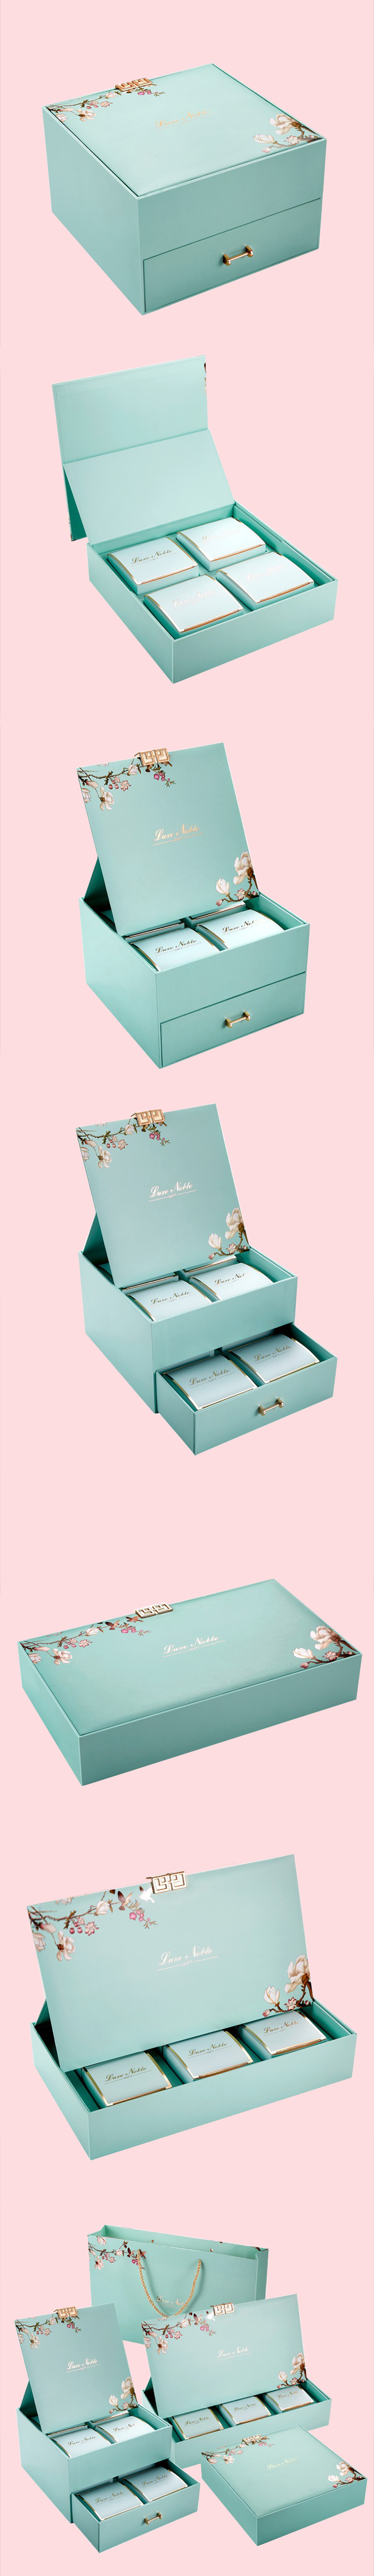 花漾蒂芙尼藍月餅盒設計製作